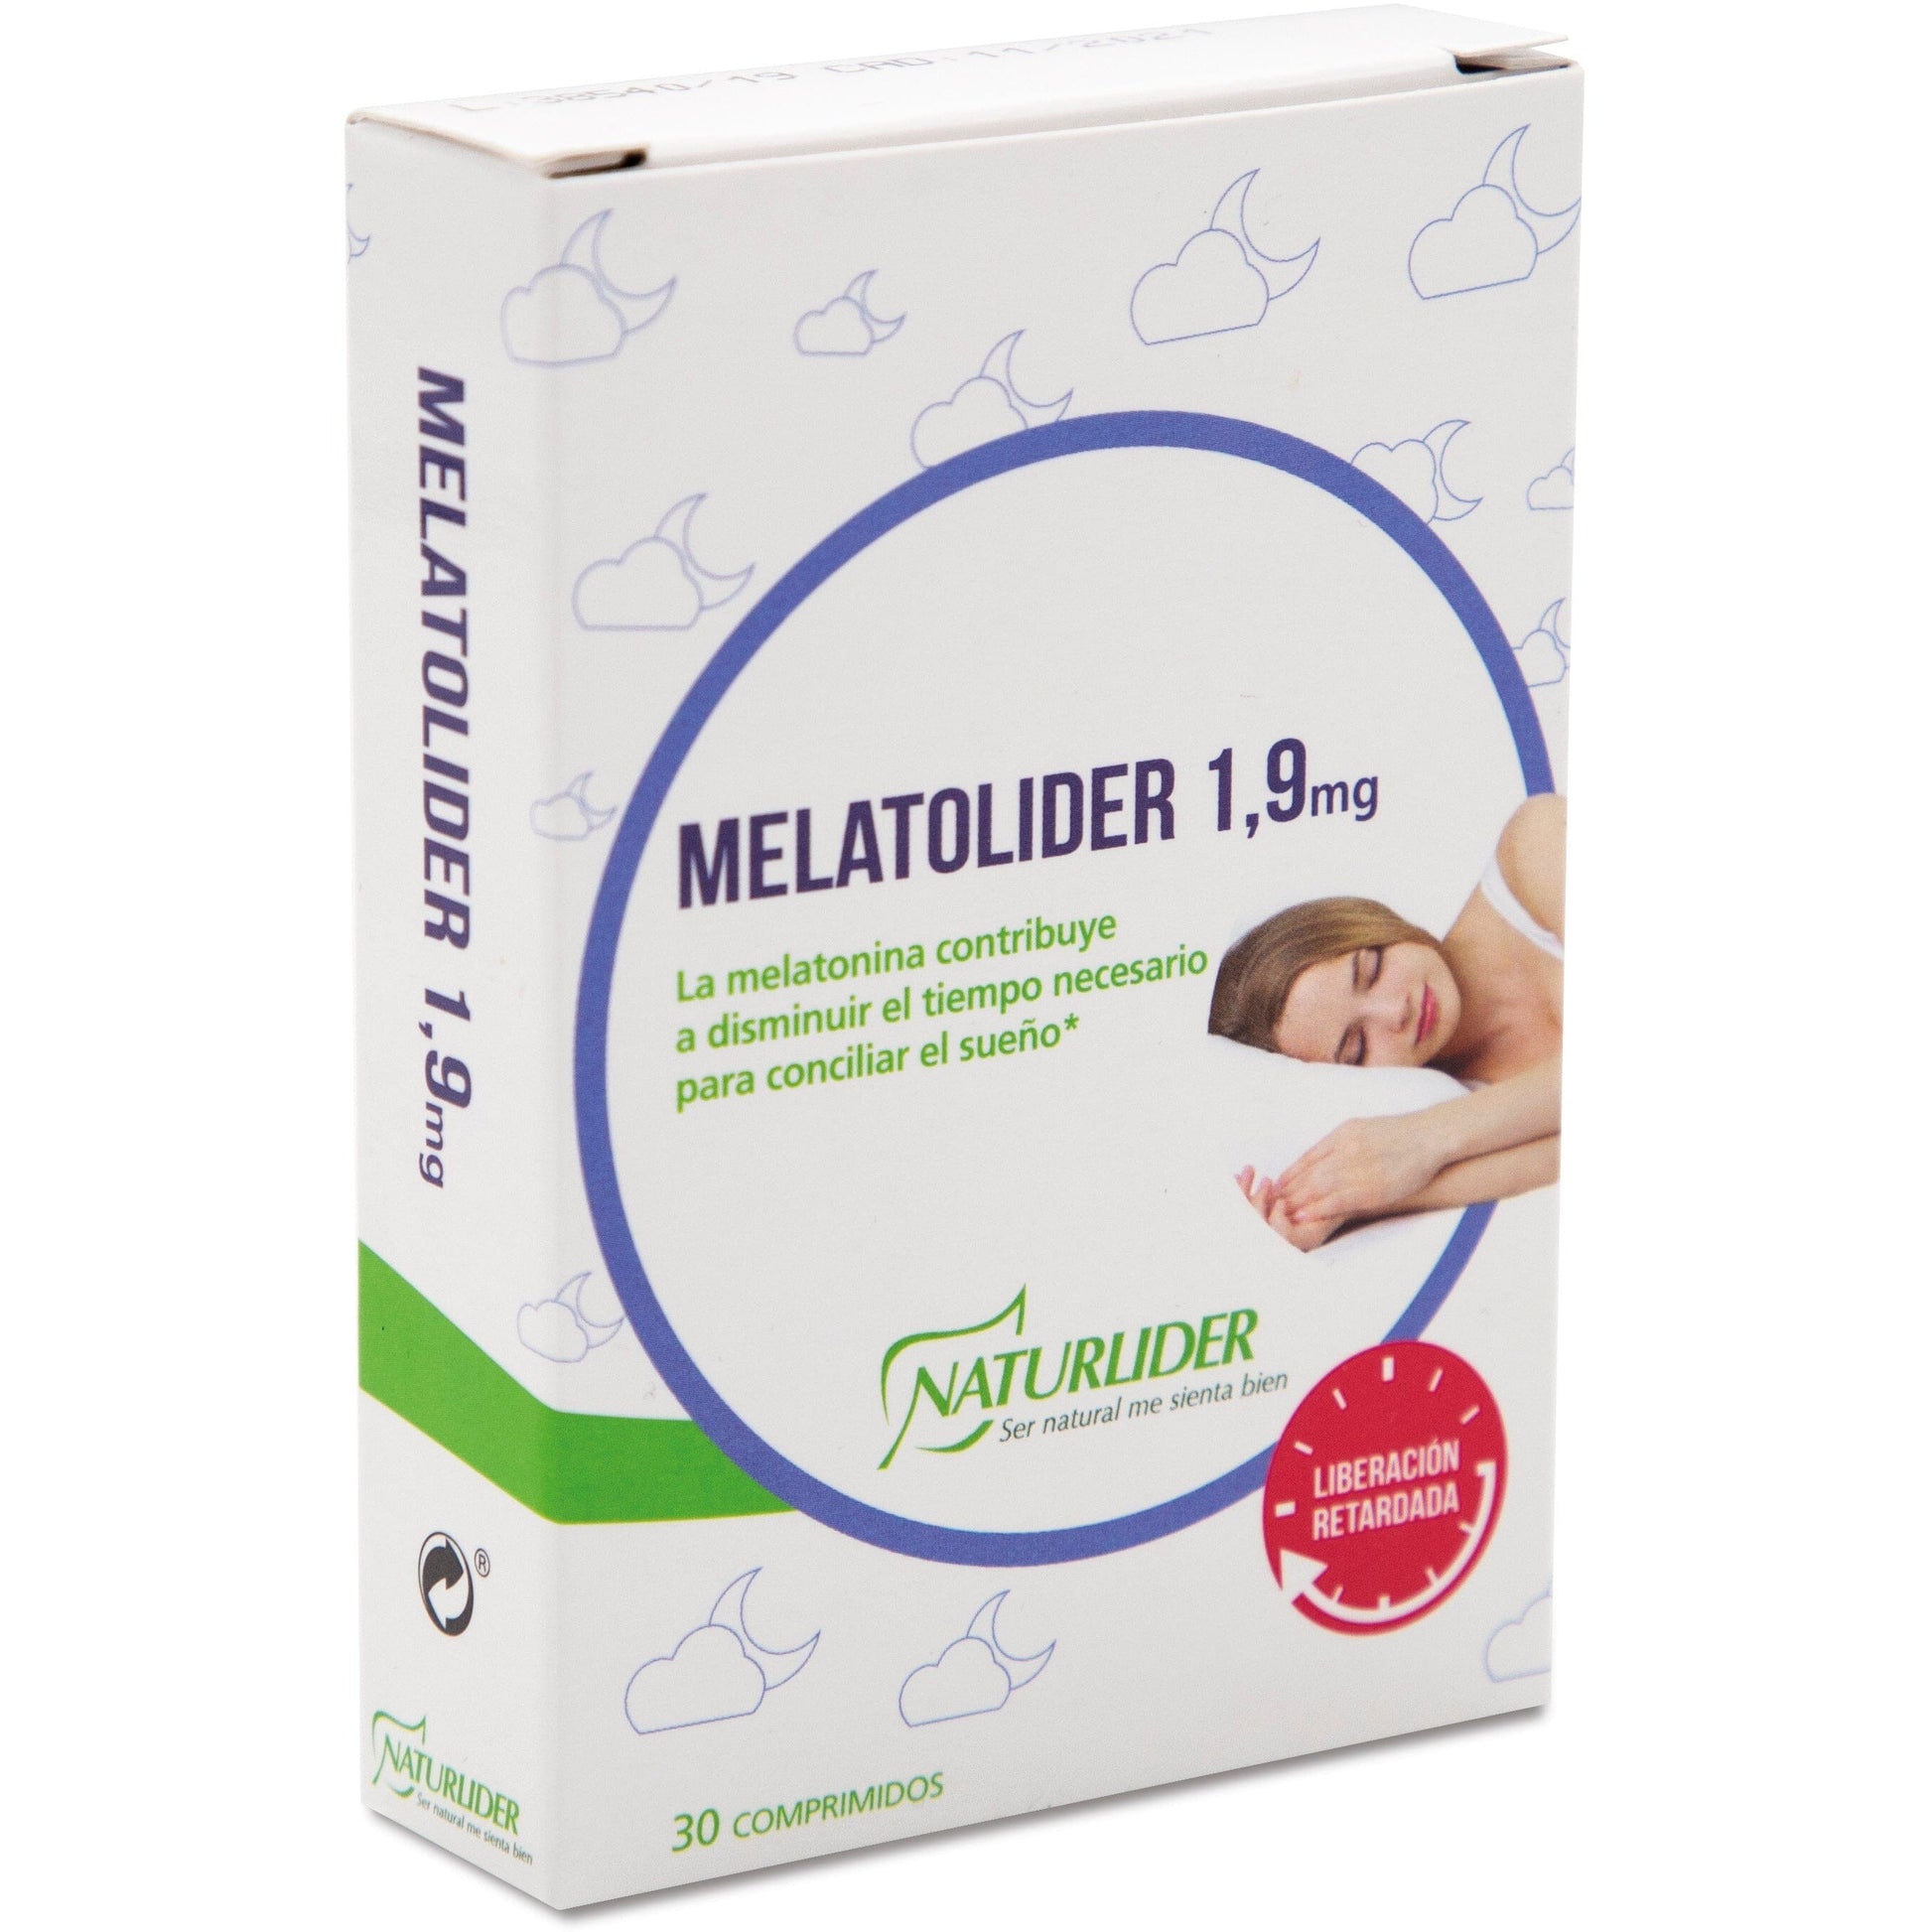 Melatolider 30 cápsulas | Naturlider - Dietetica Ferrer